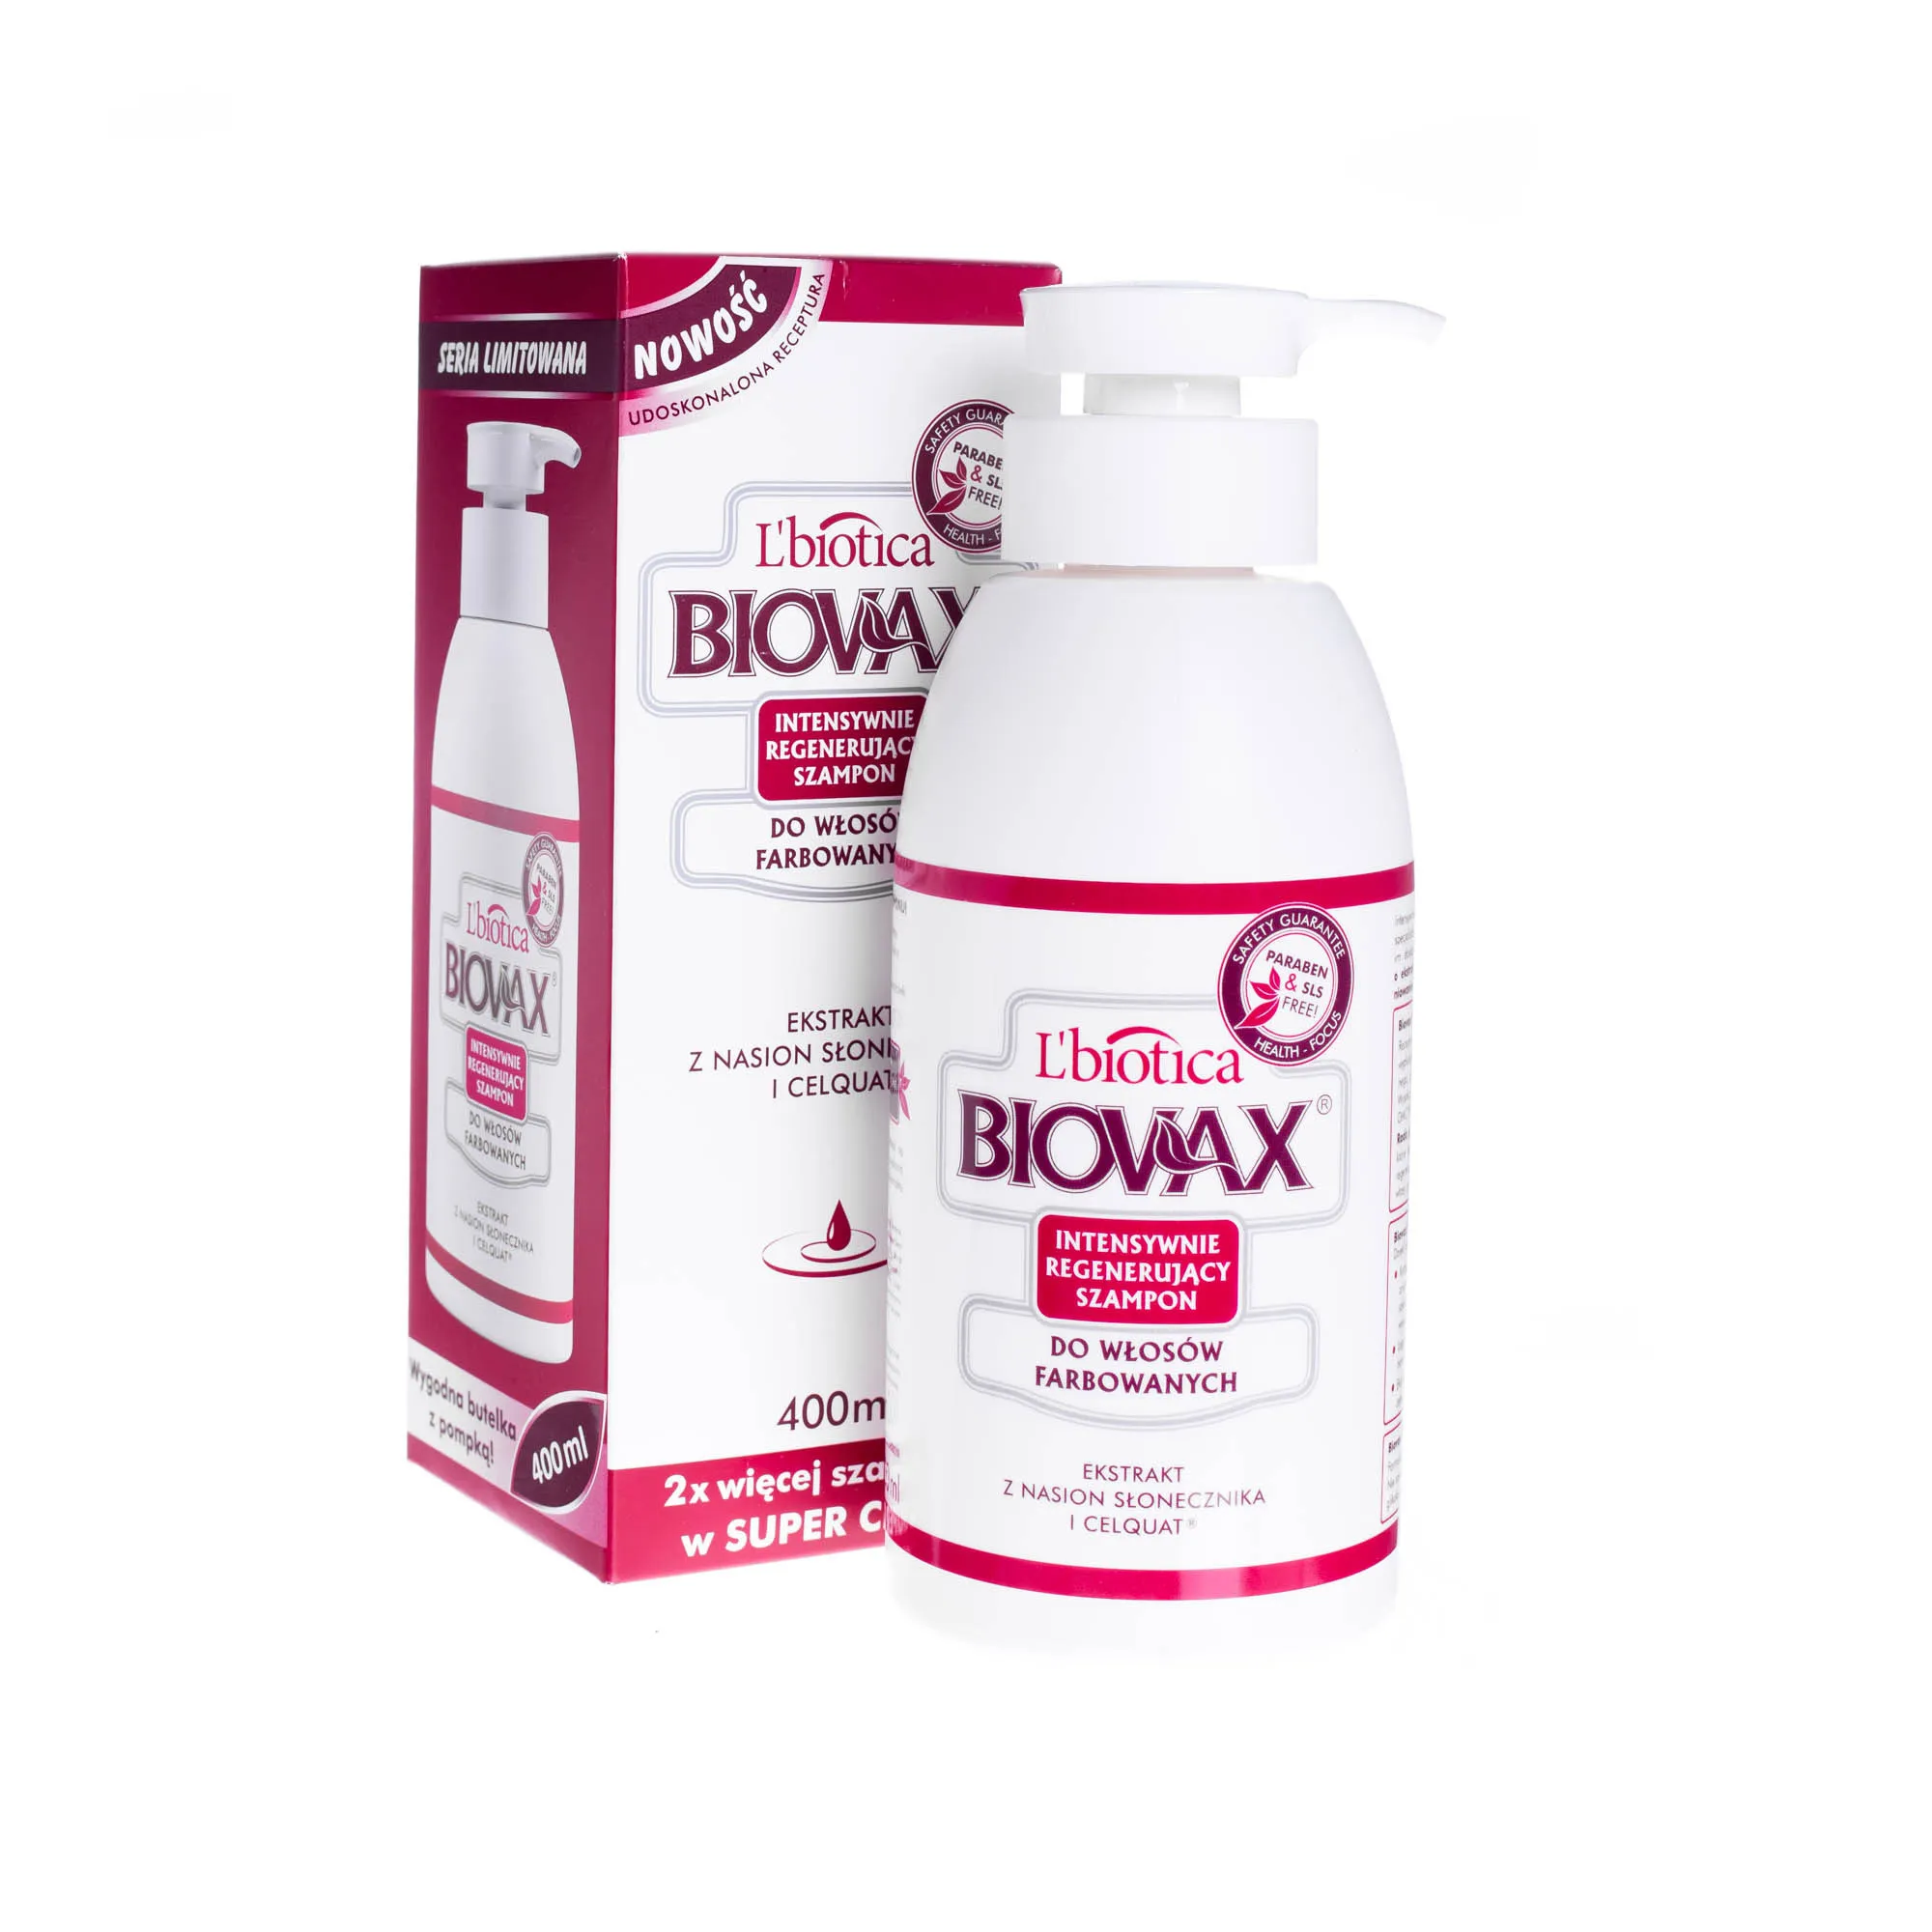 L'Biotica Biovax intensywnie regenerujący szampon do włosów farbowanych, 400 ml